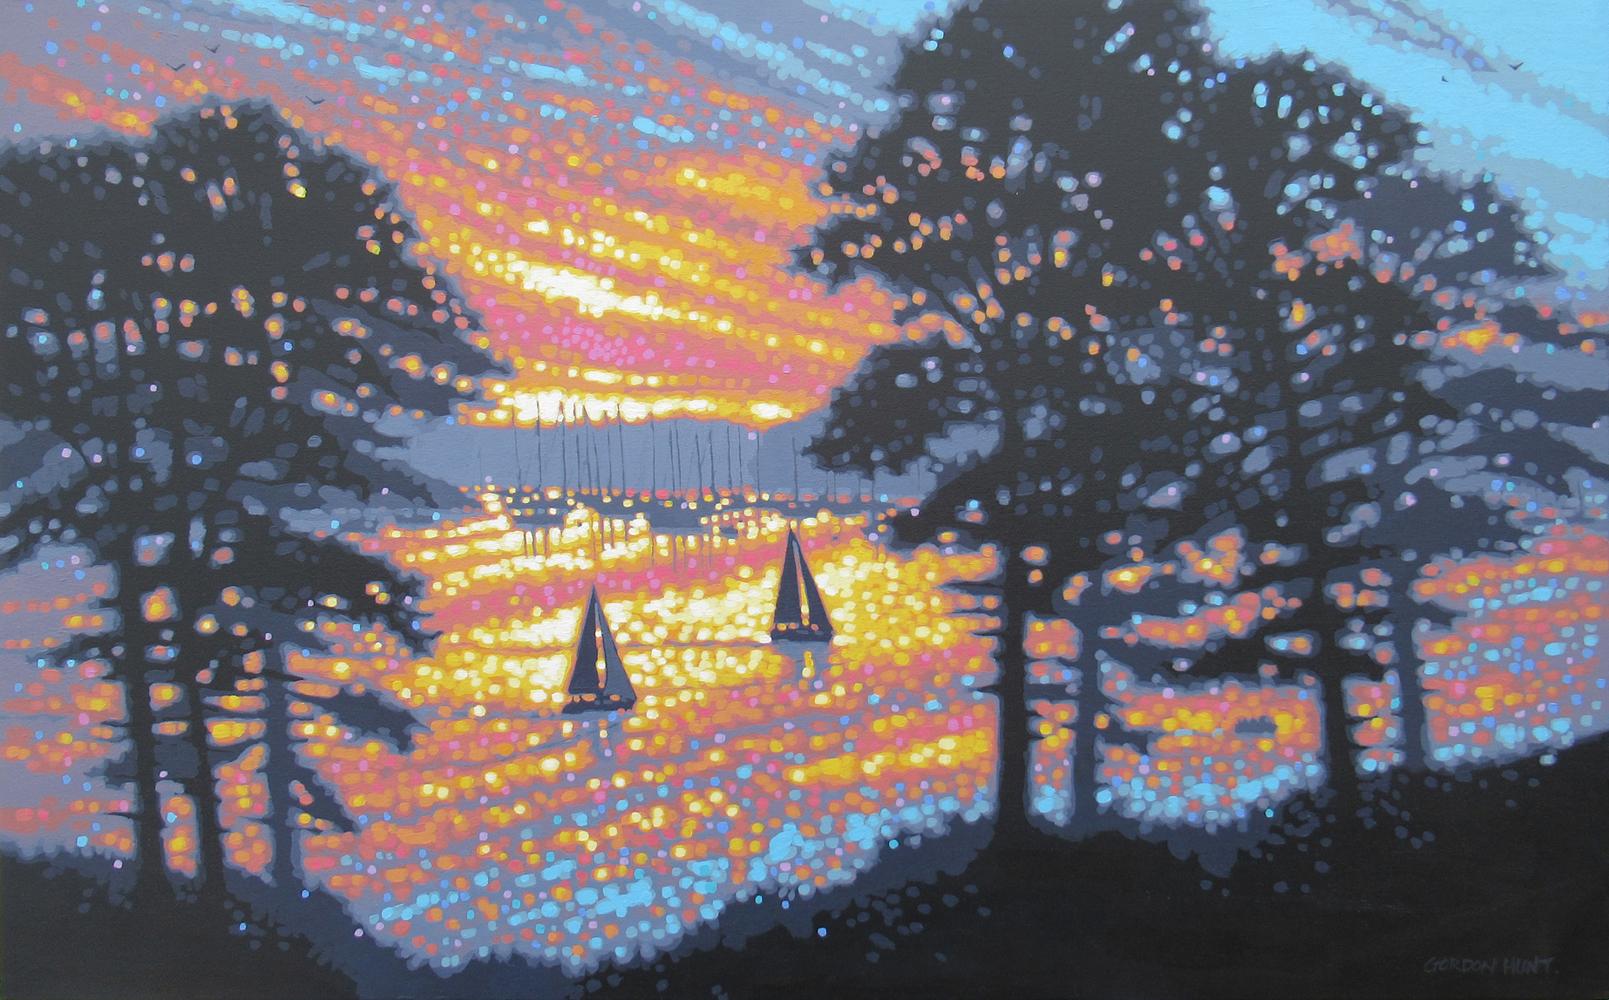 Still-Life Painting Gordon Hunt - Œuvre d'art de paysage marin au lever du soleil, peinture de port, Cornouailles